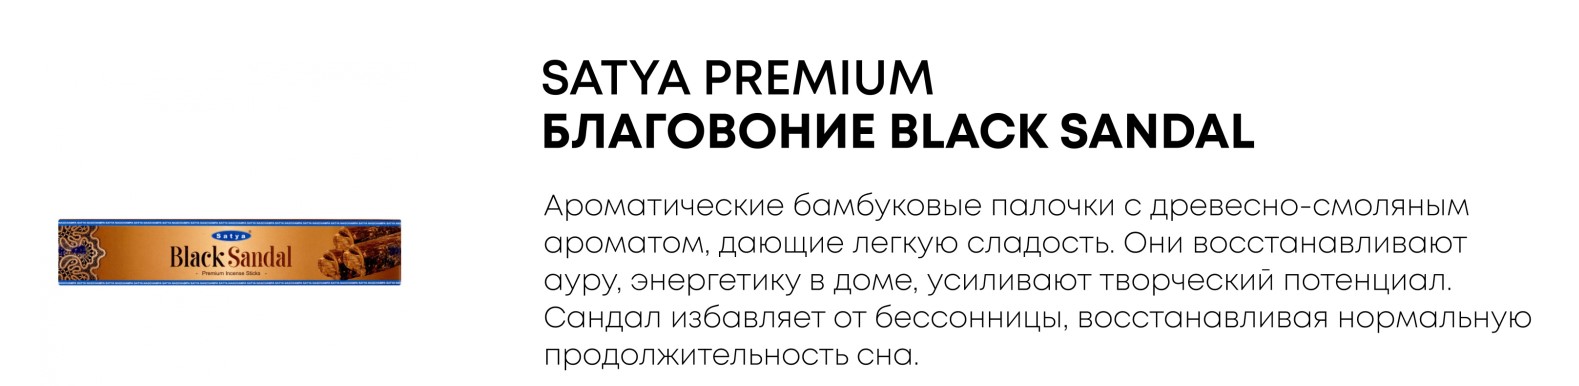  Satya Premium Black Sandal -      .